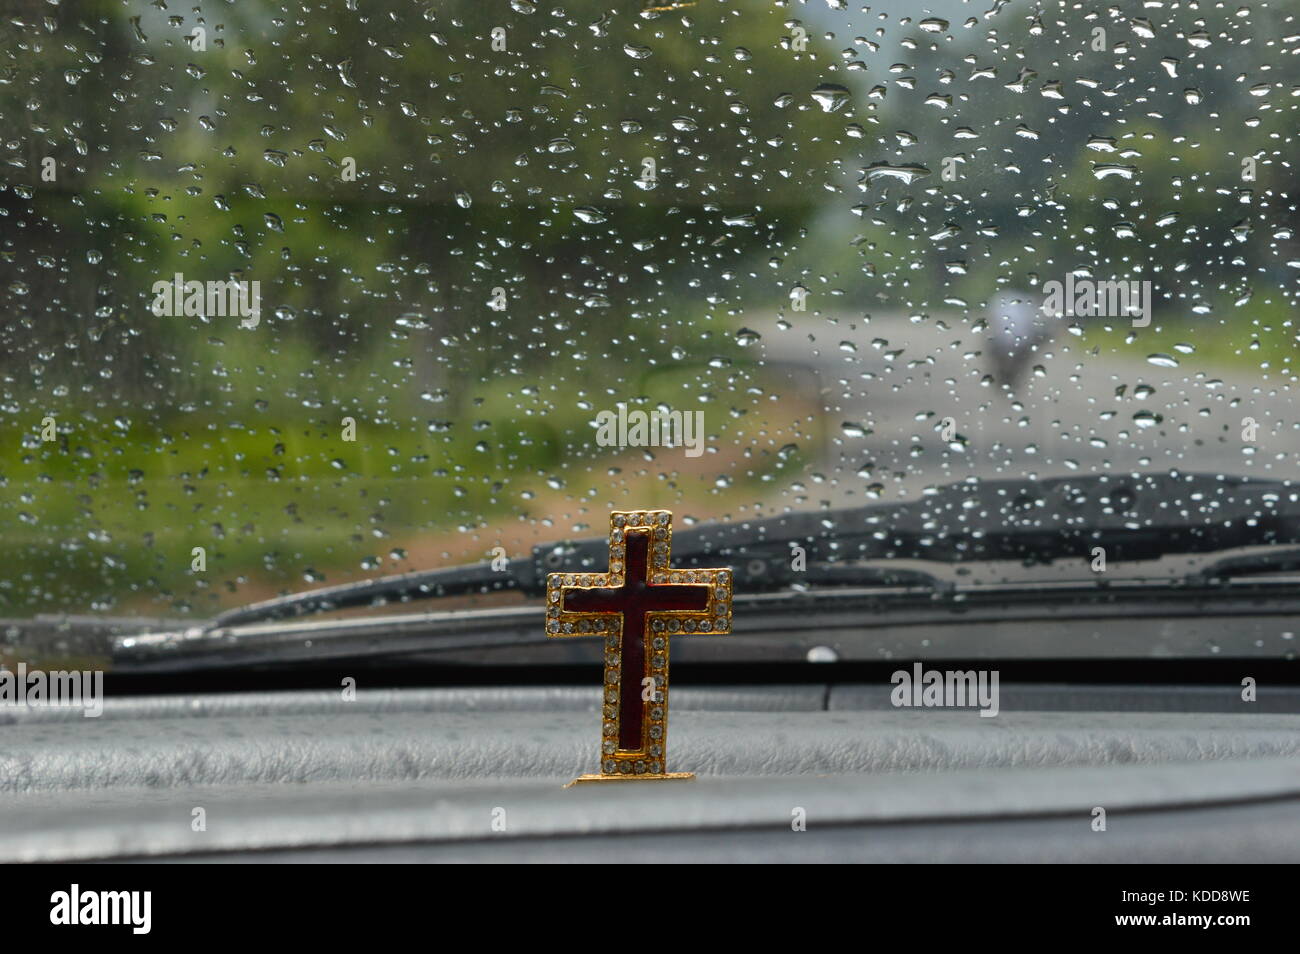 Preciosas las gotas de lluvia en el cristal del coche. Foto de stock